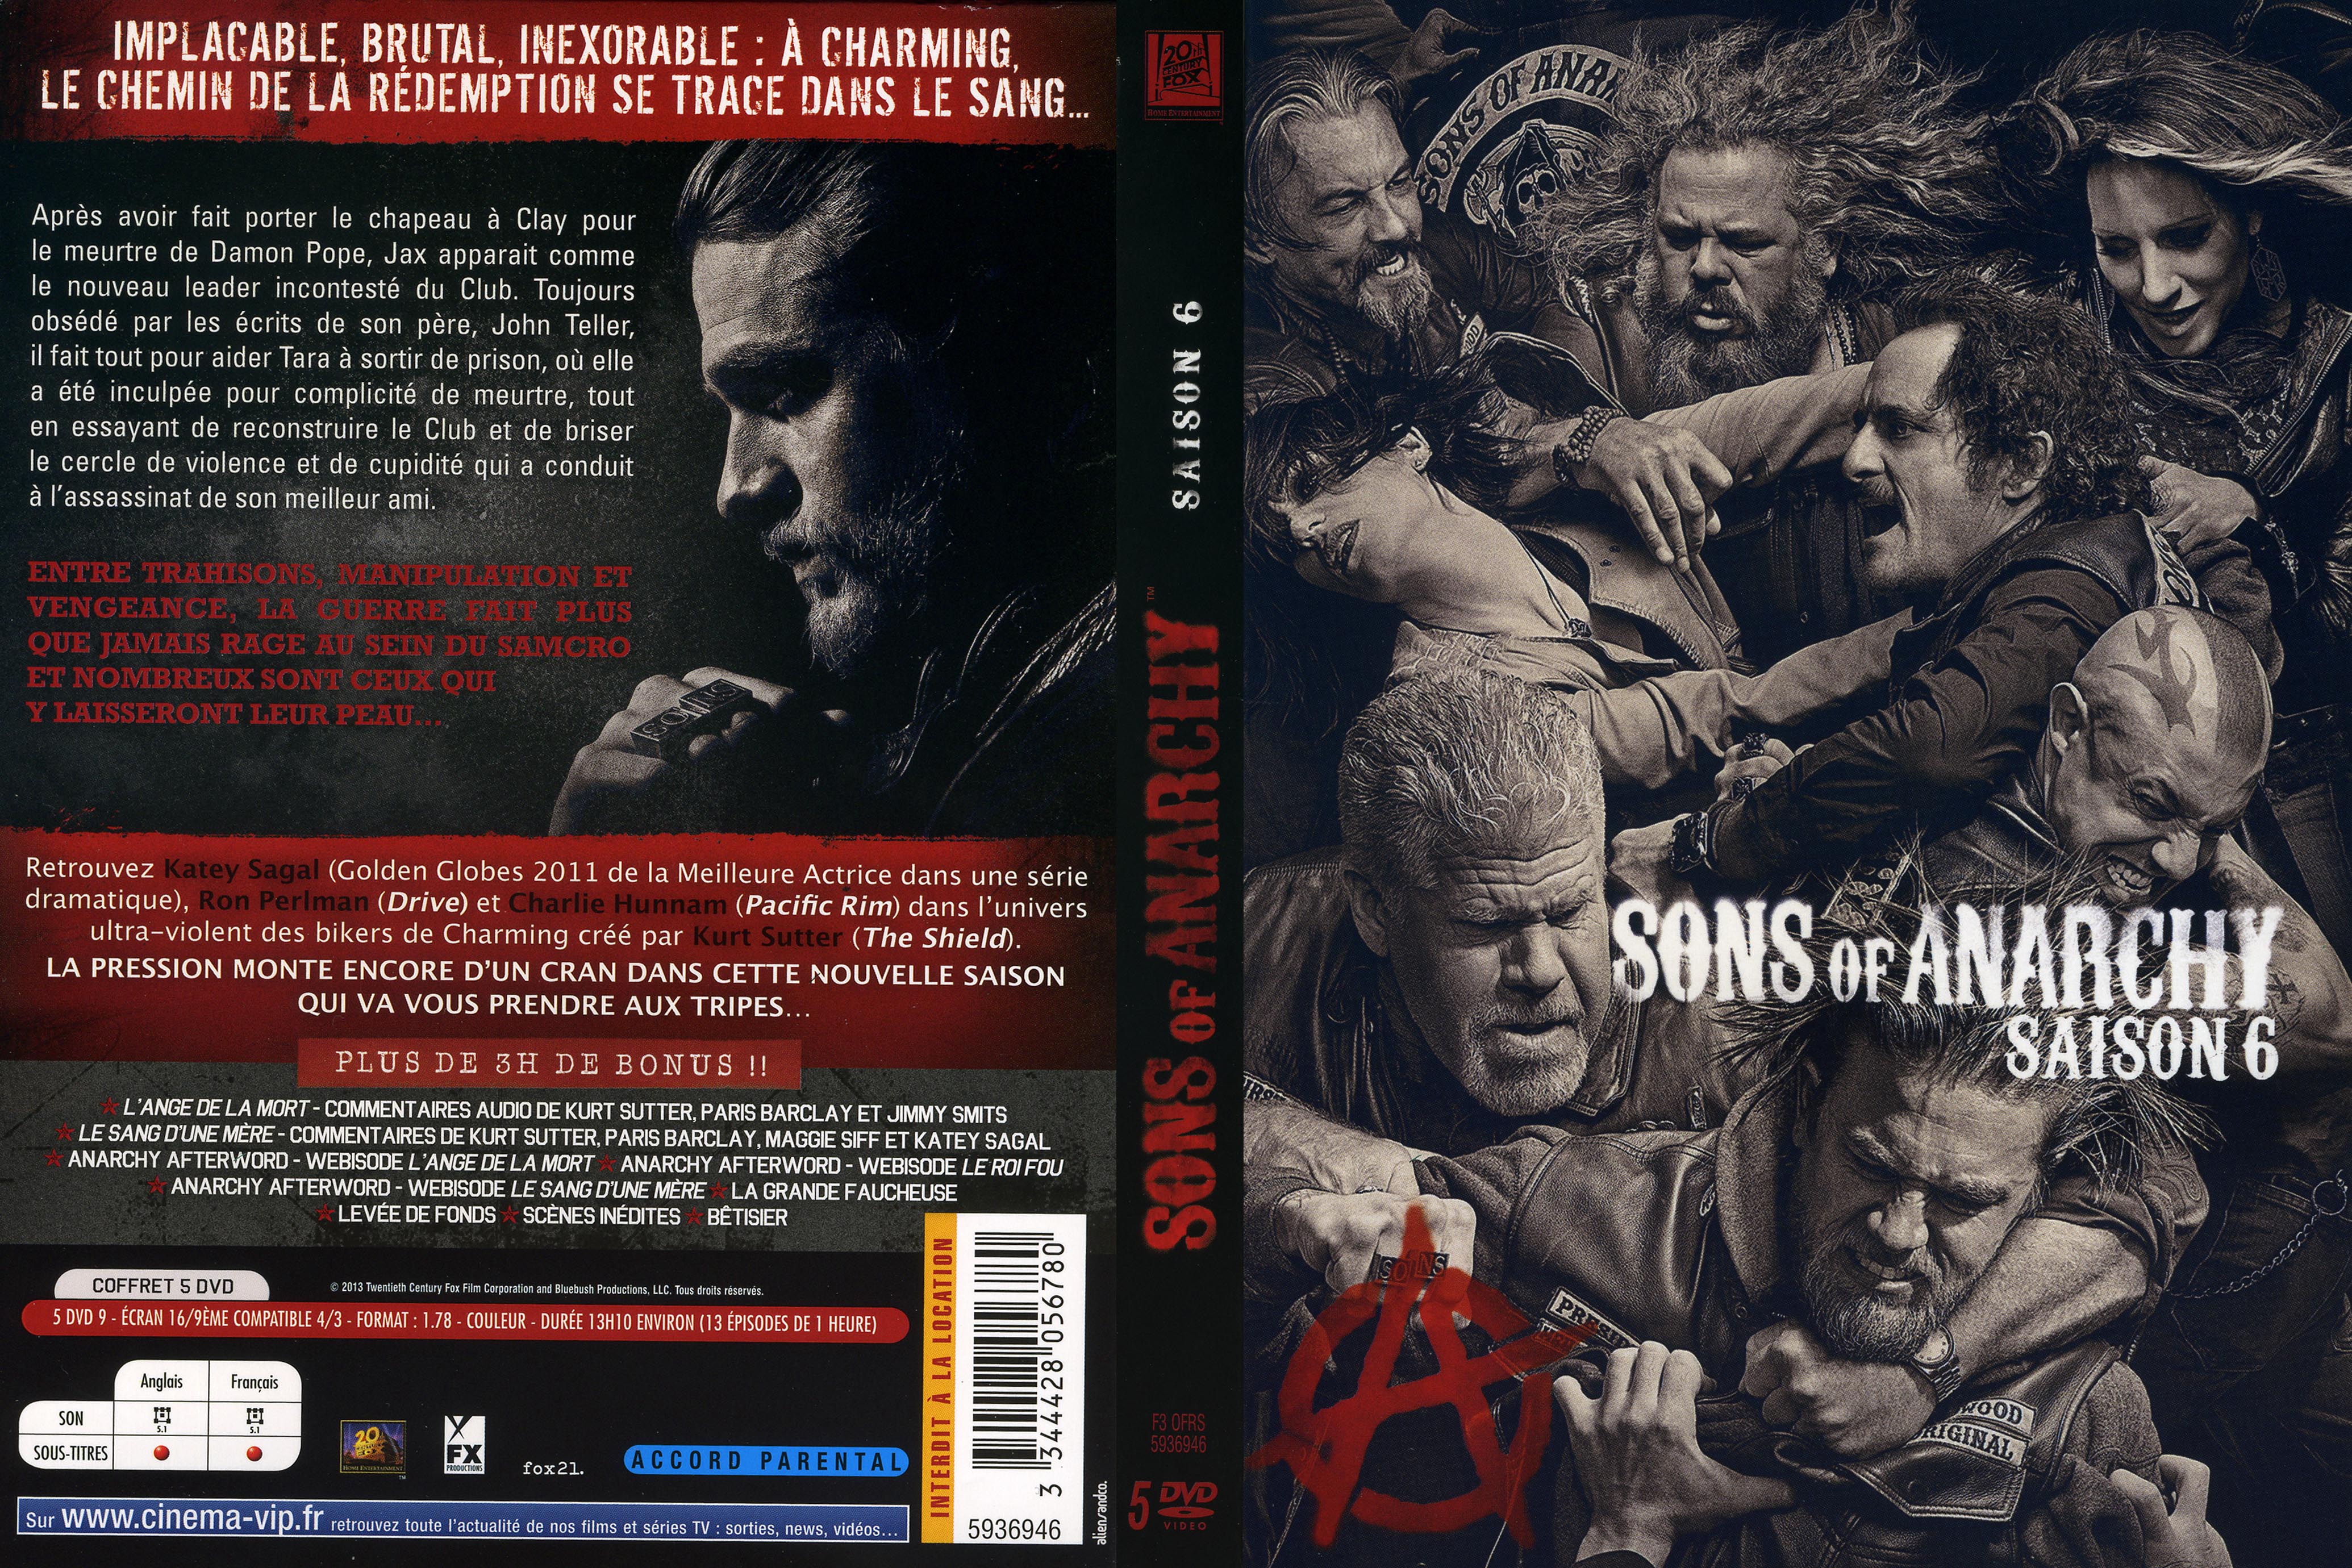 Jaquette DVD Sons of anarchy Saison 6 COFFRET